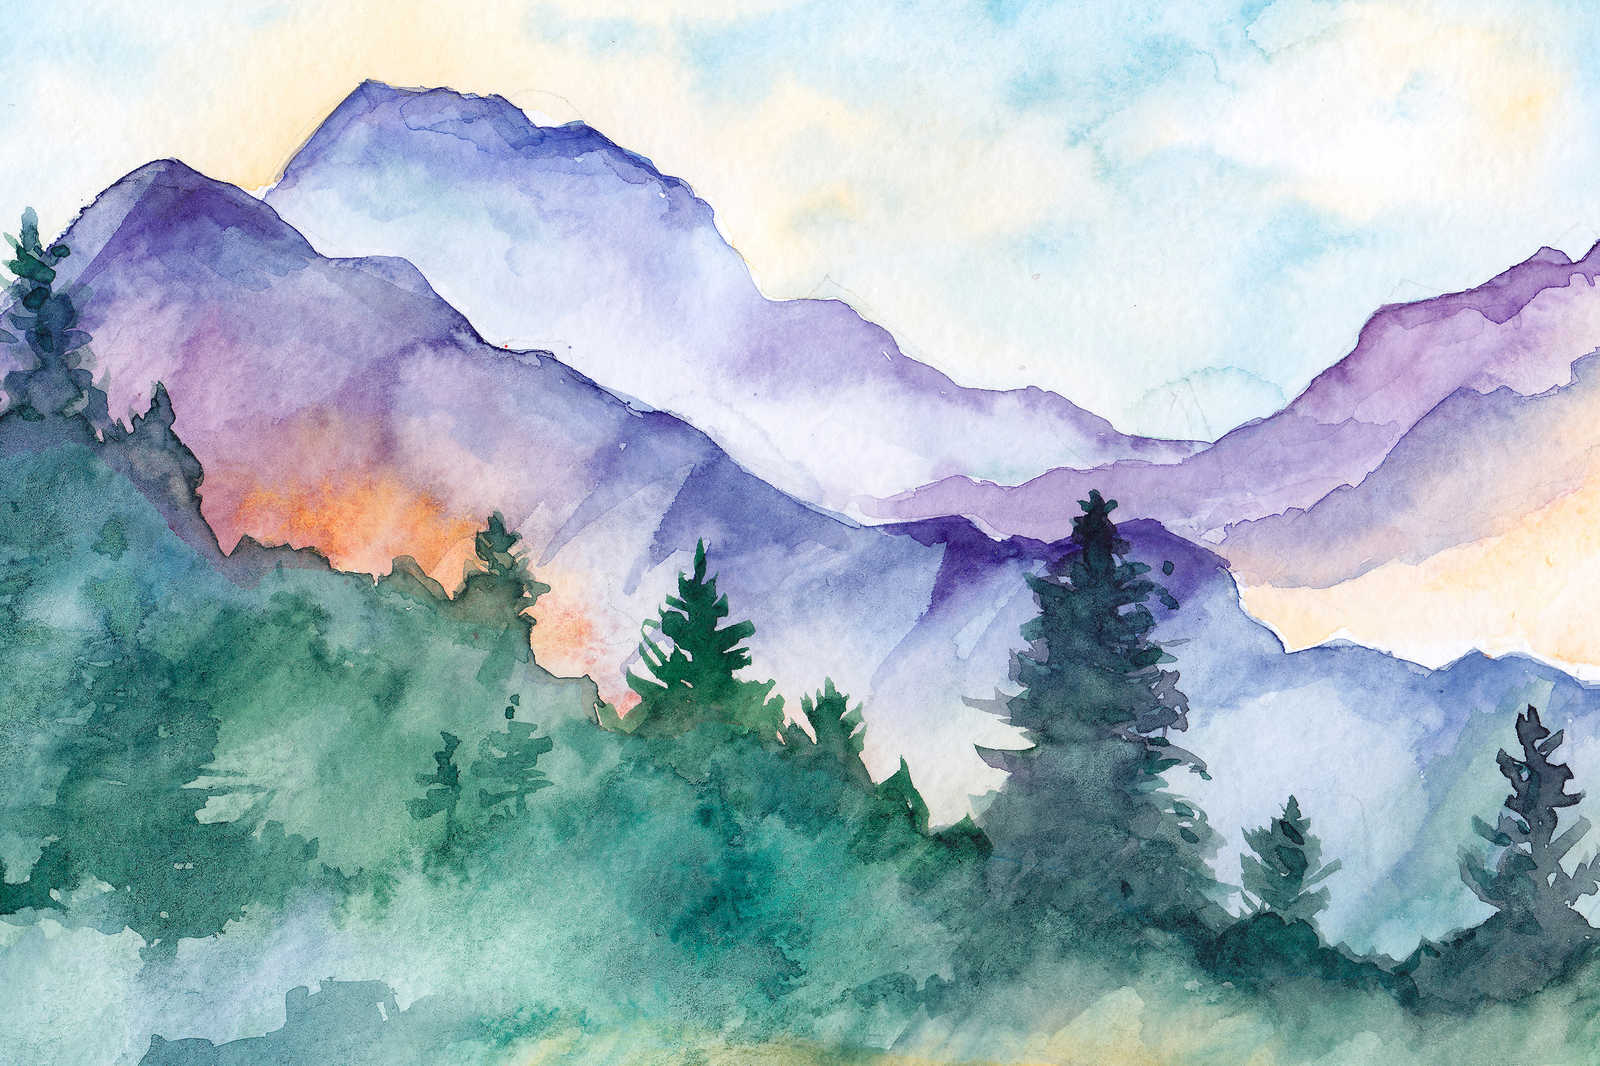             Leinwandbild mit Wasserfarben gemalte Berglandschaft – 0,90 m x 0,60 m
        